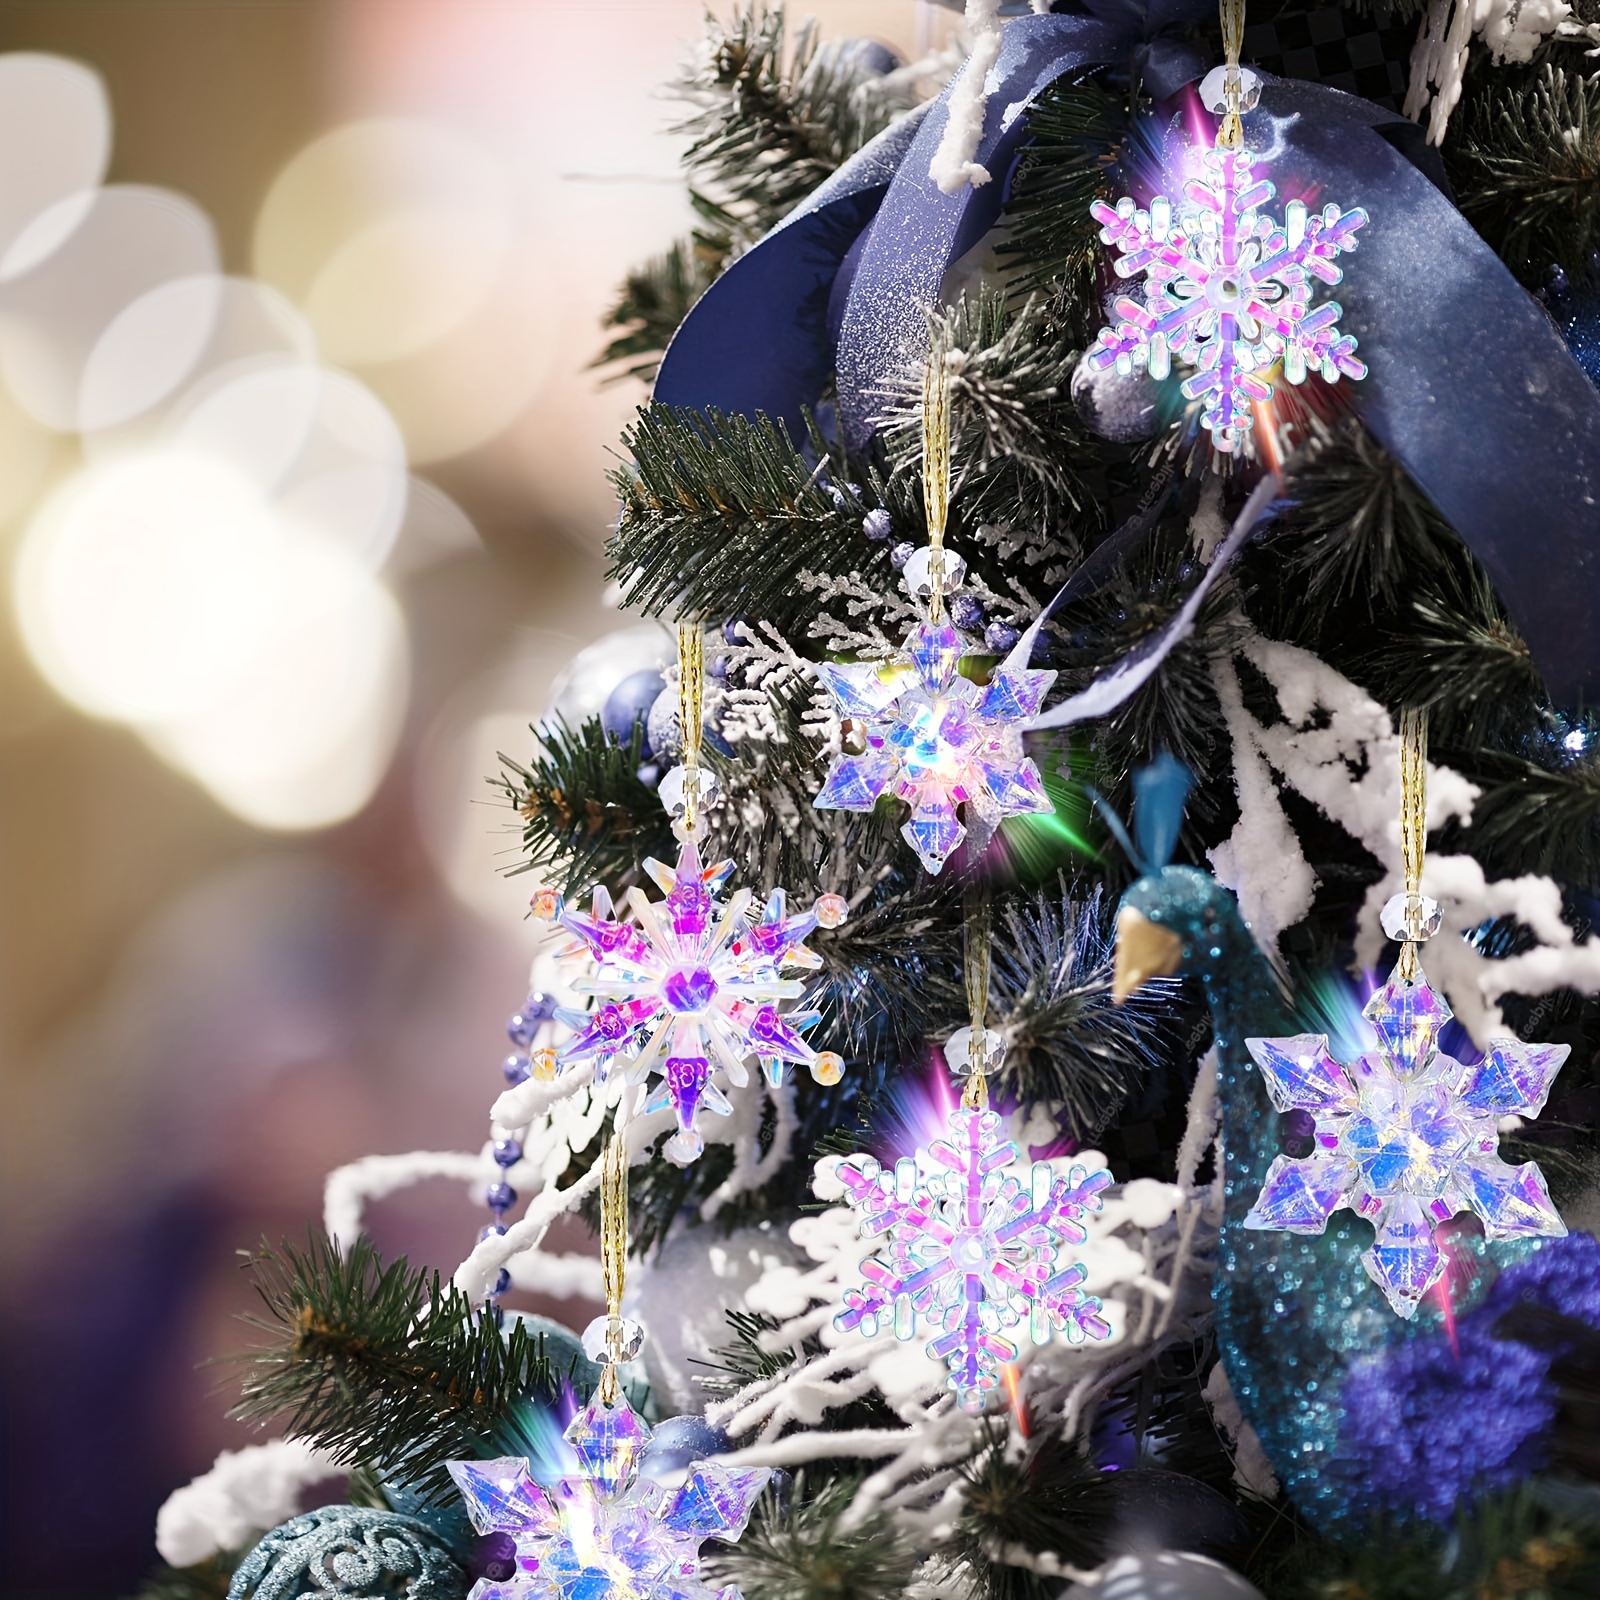  24PCS Snowflake Christmas Decorations, 3D Large